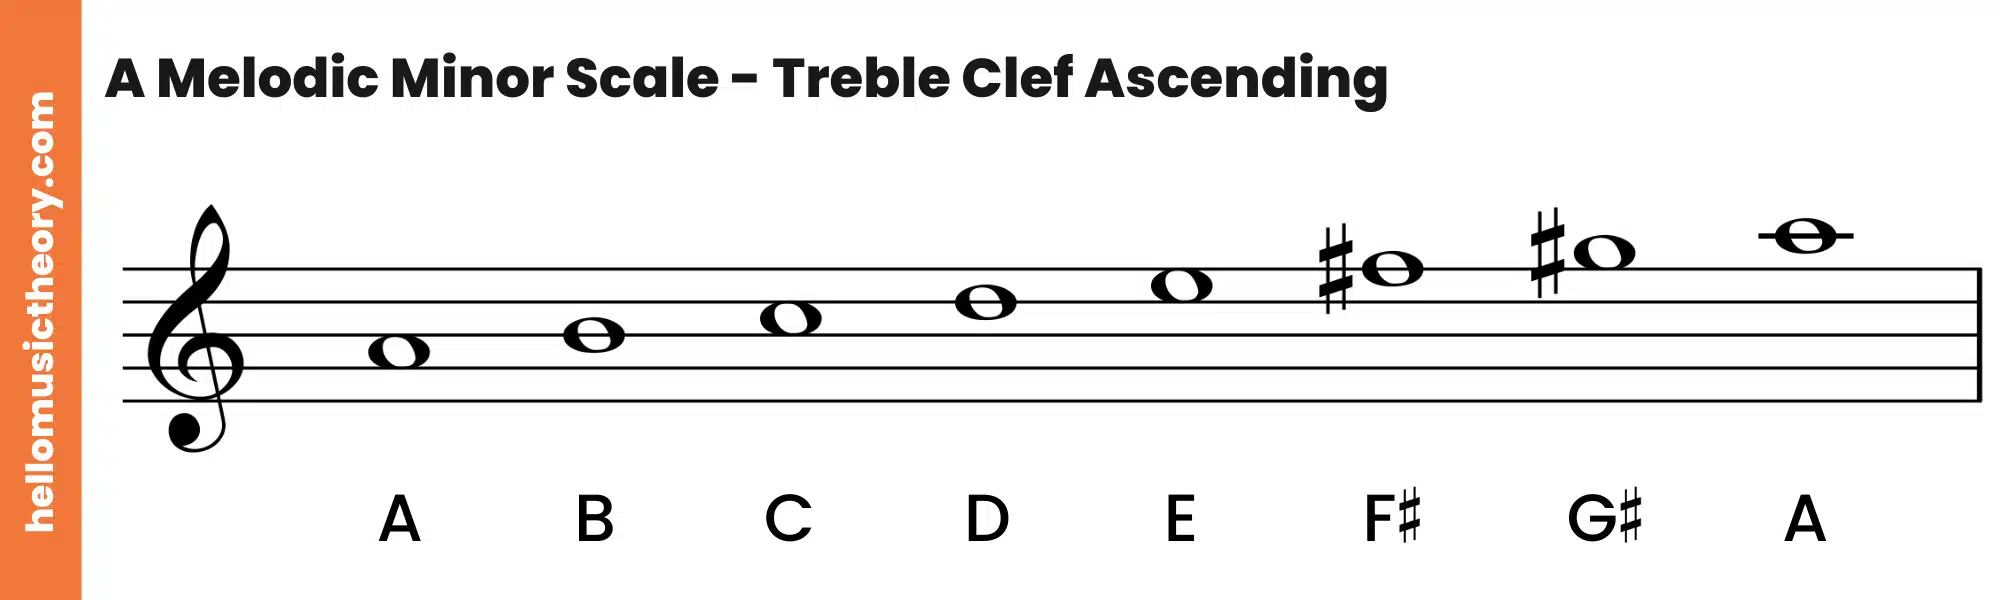 A Melodic Minor Scale Treble Clef Ascending